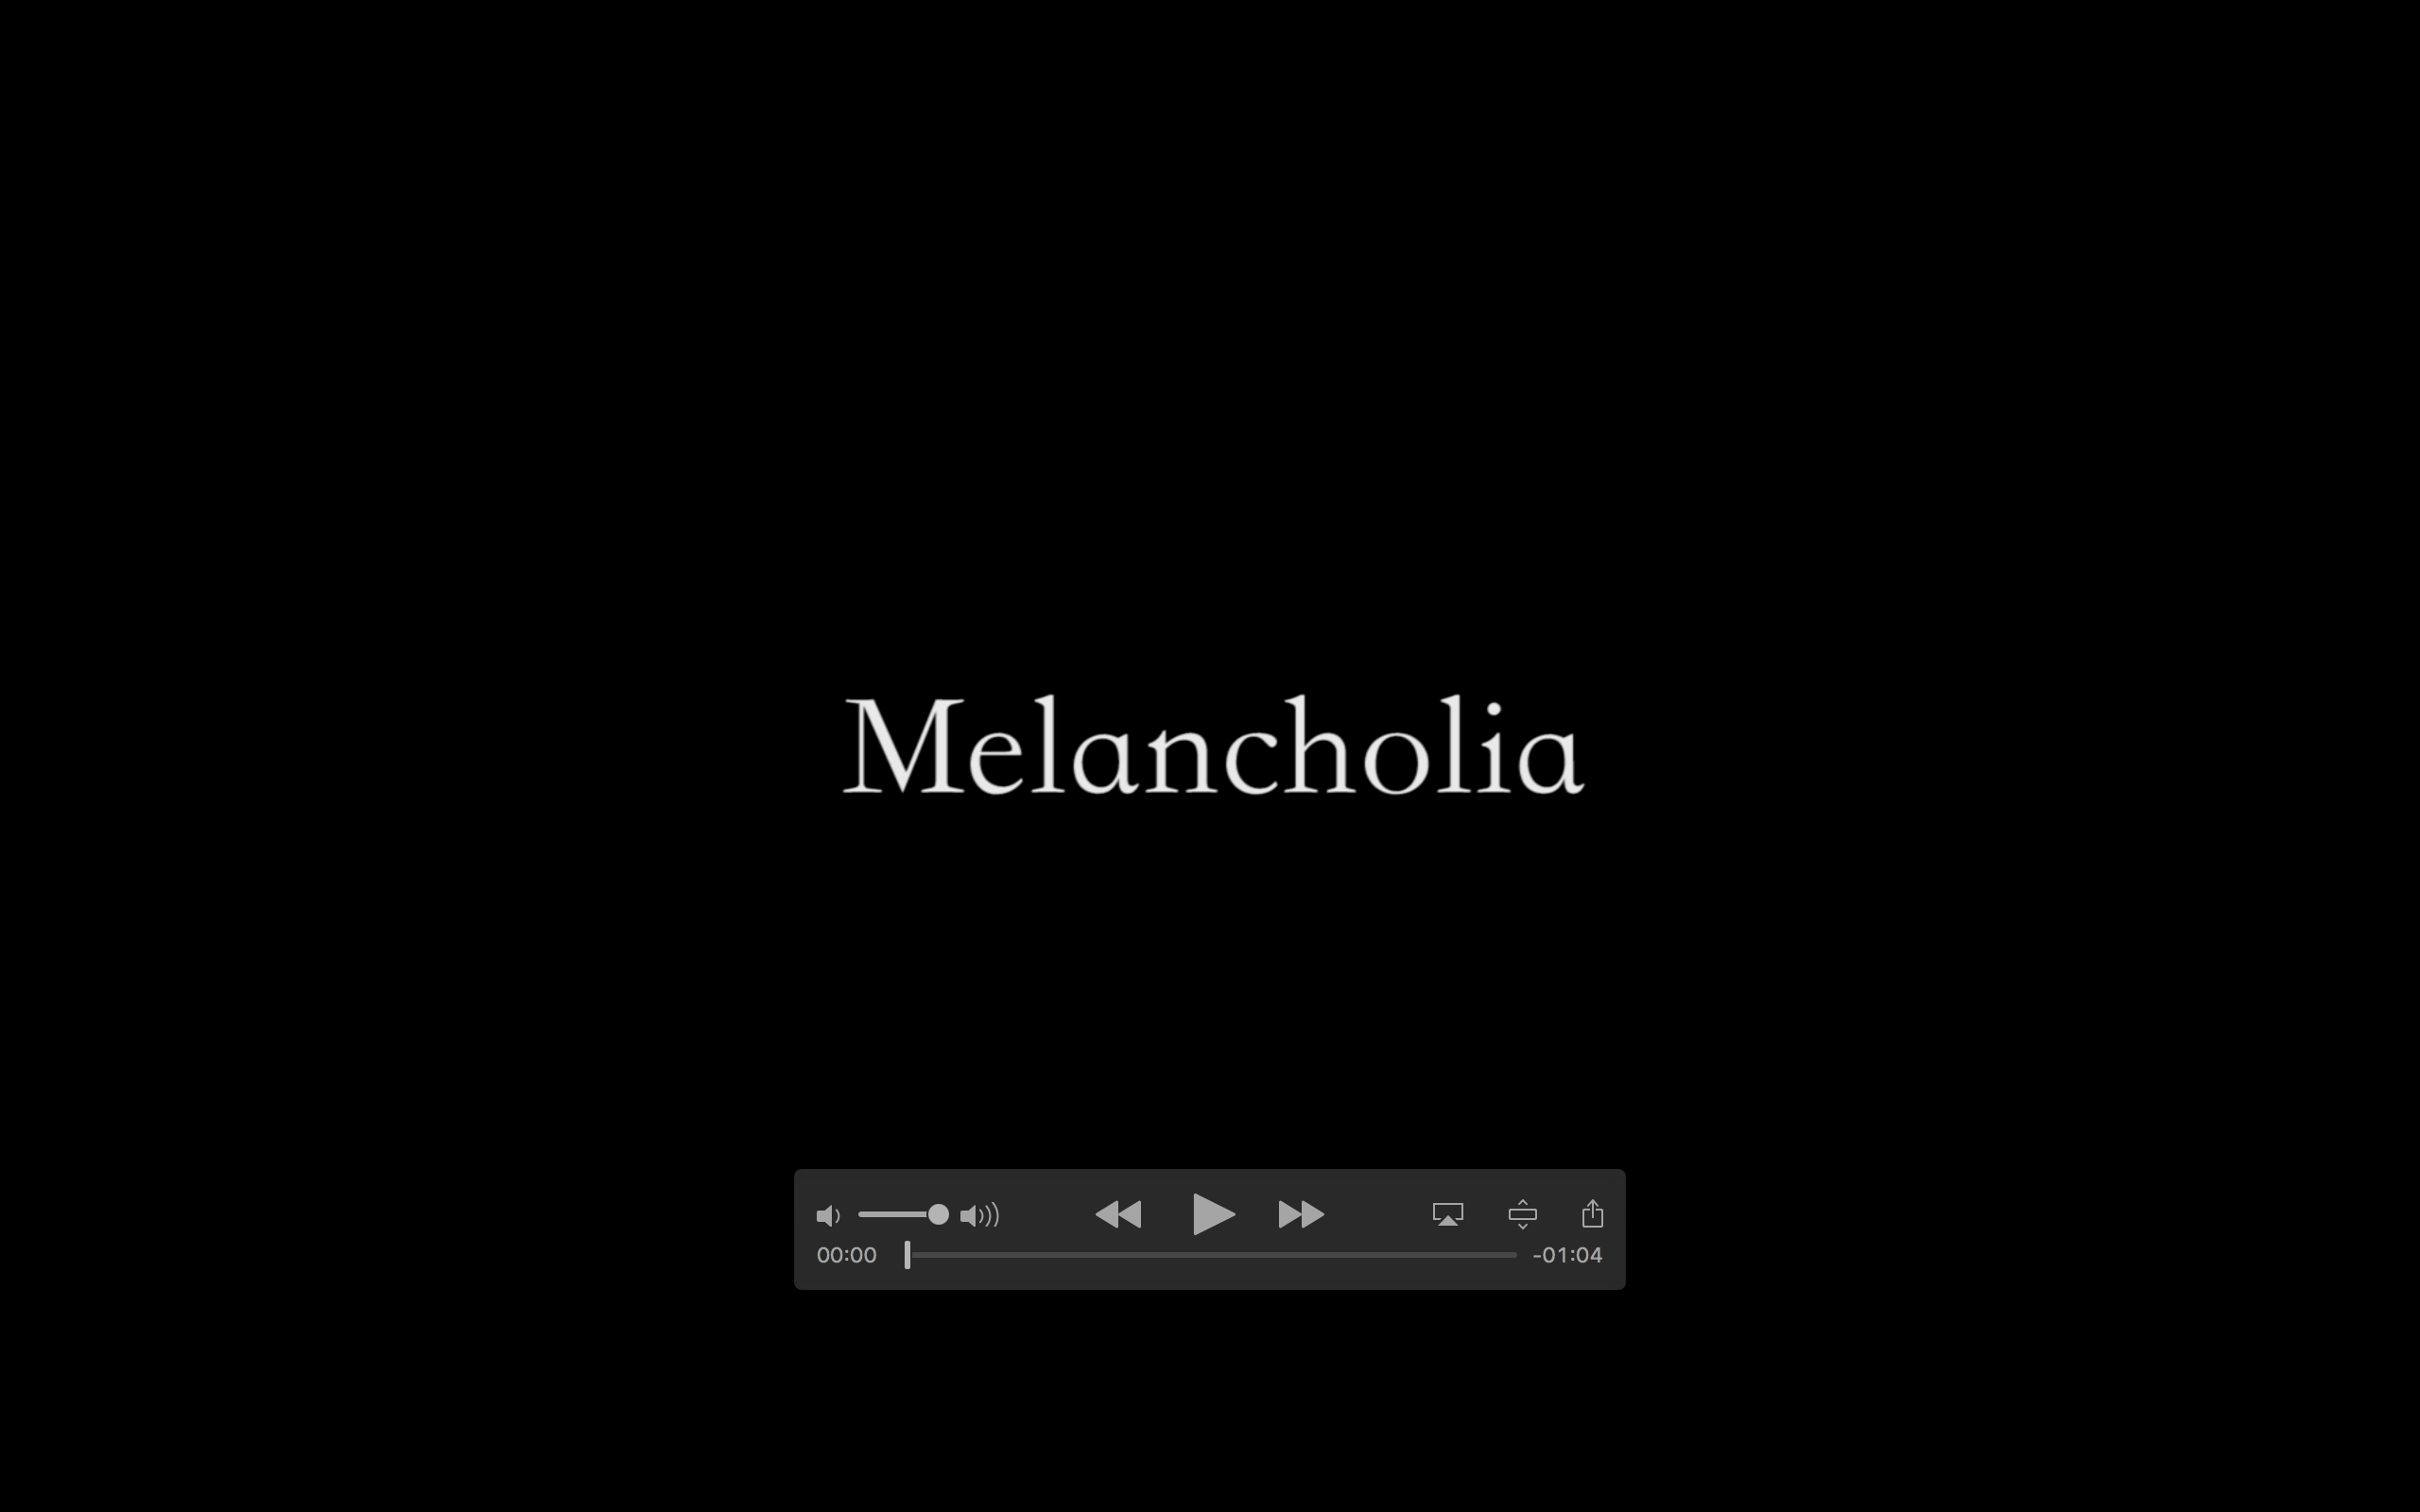 Time: Final Video—-Melancholia